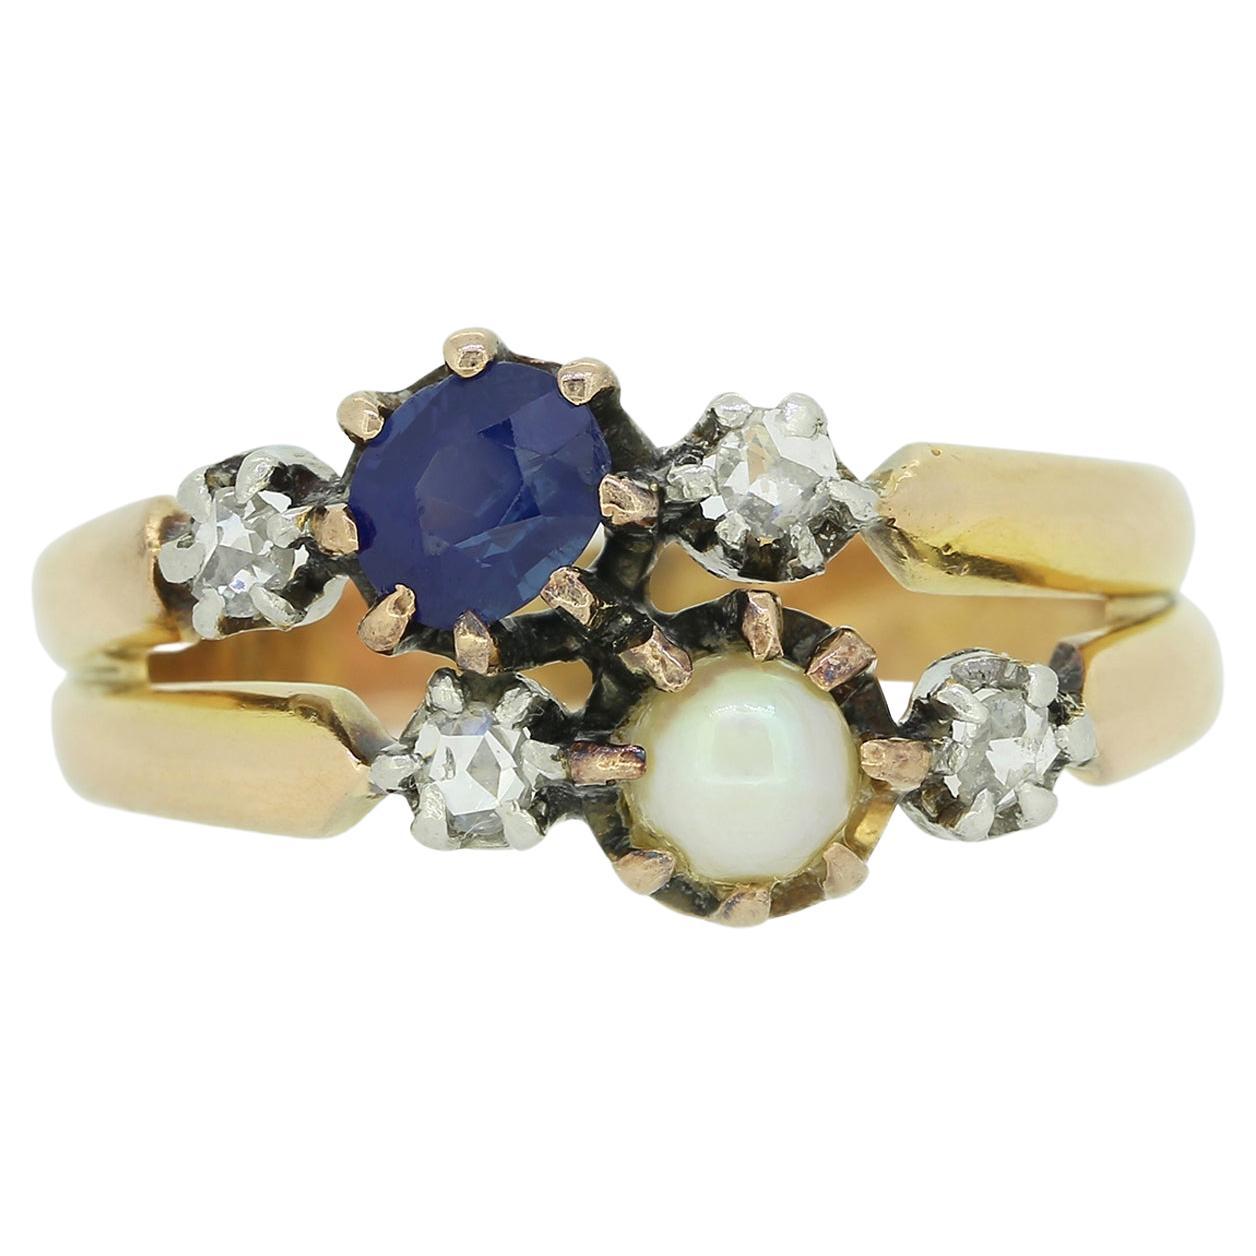 Viktorianischer Ring mit Saphiren, Perlen und Diamanten